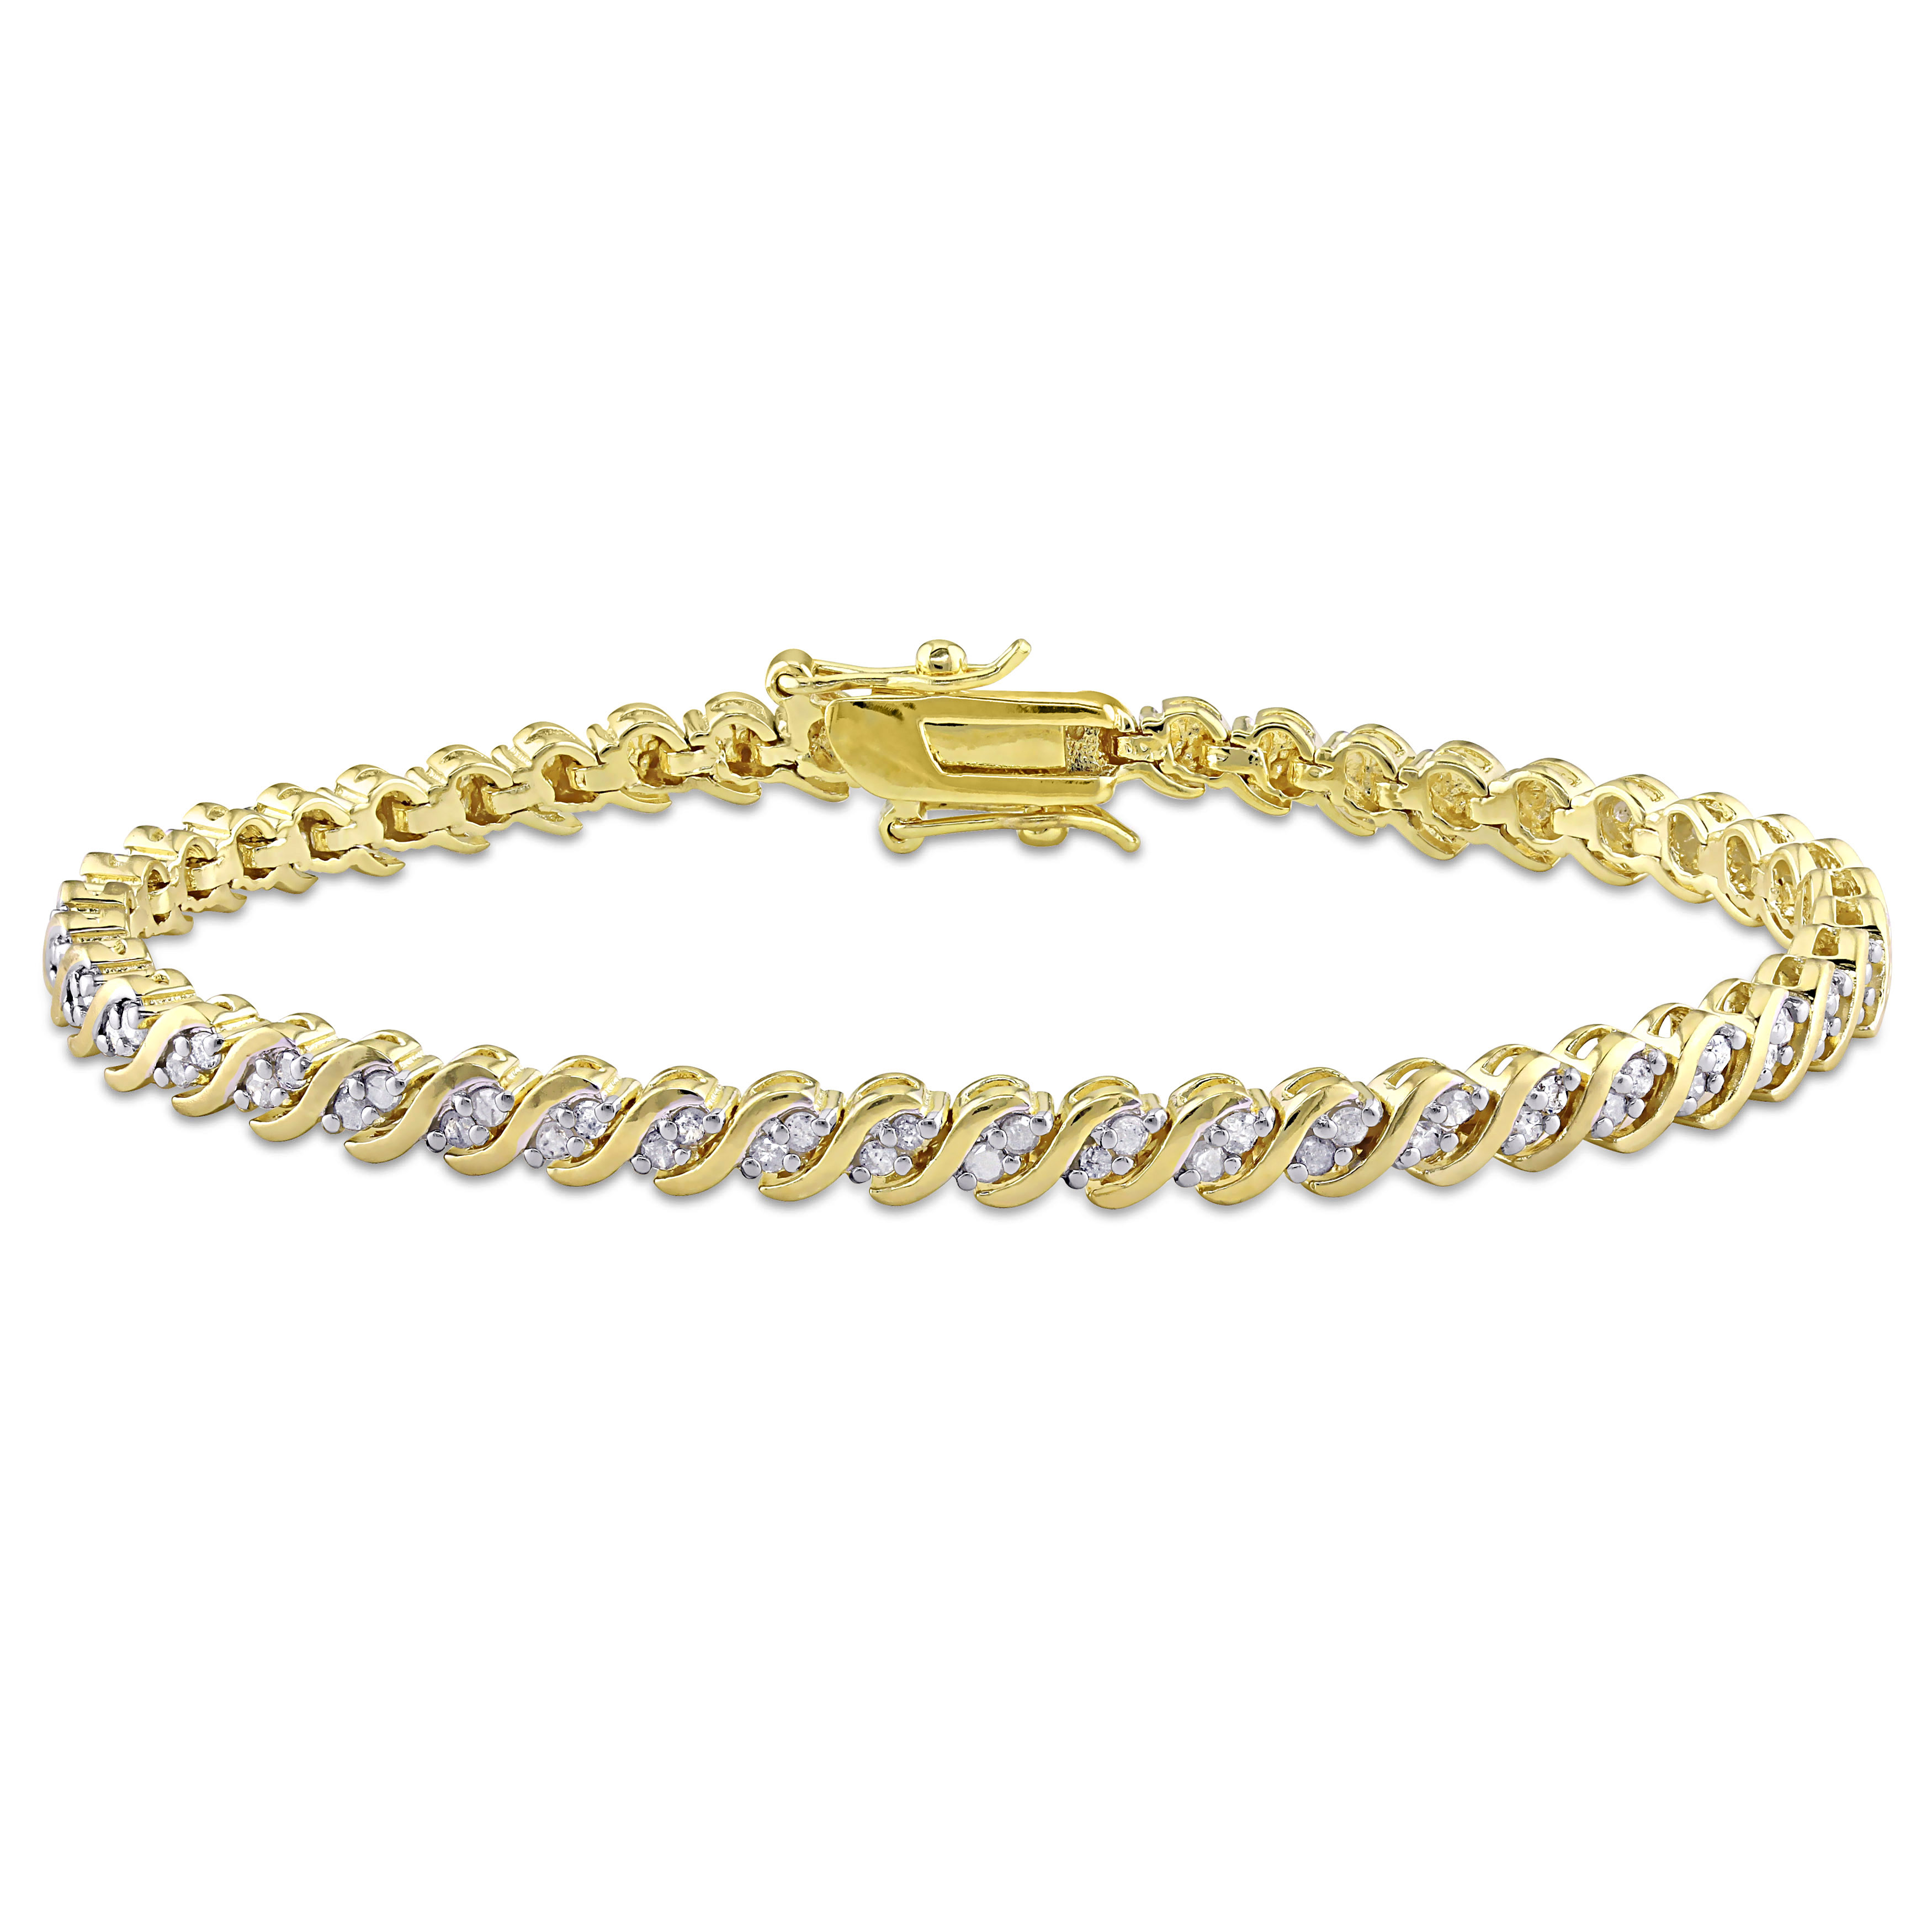 1 Carat Diamond Tennis Bracelet | Jewelry by Johan - Jewelry by Johan